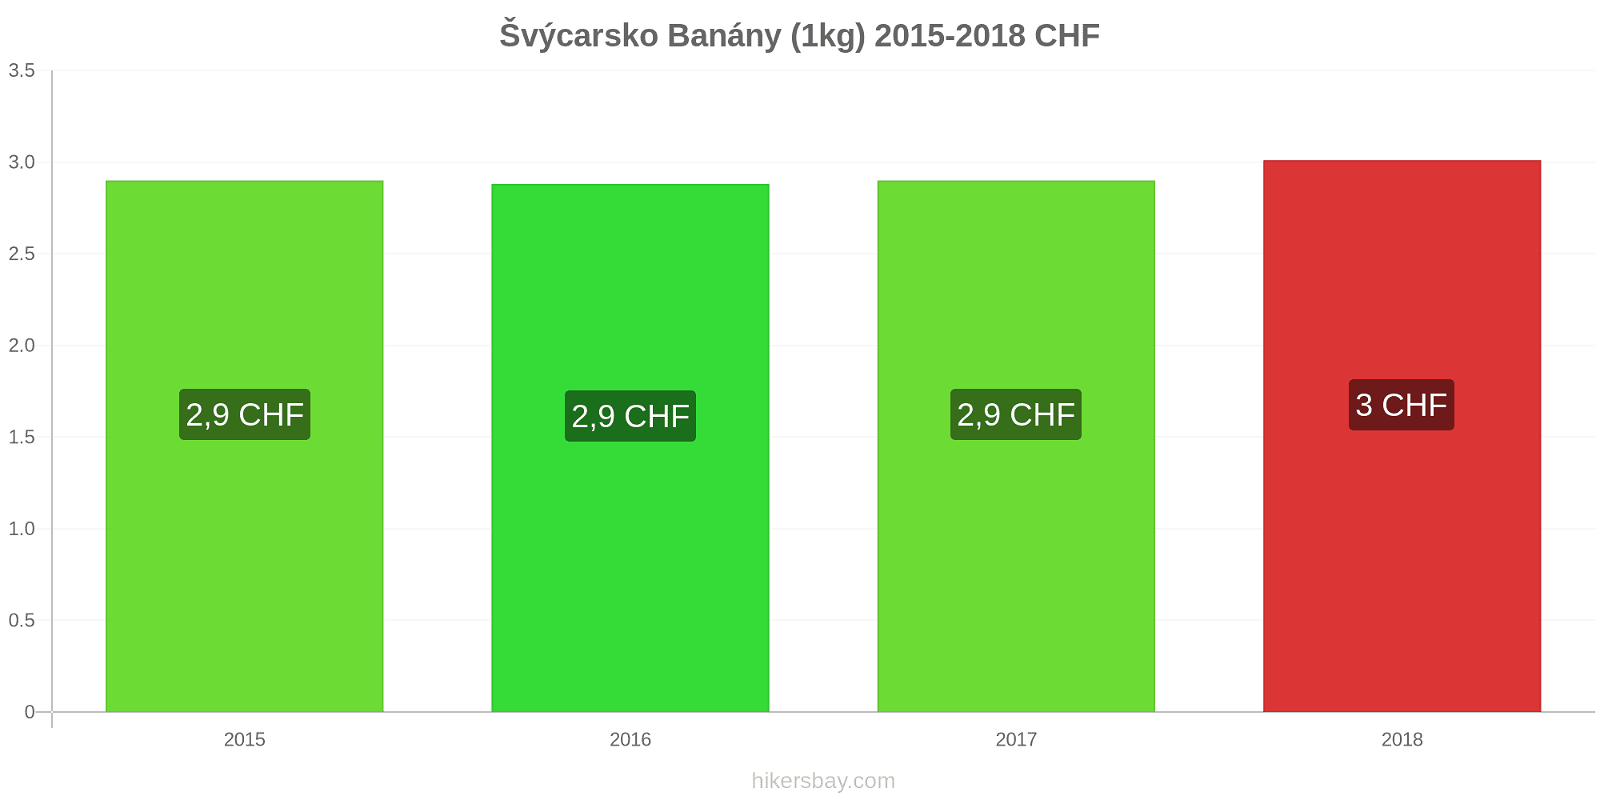 Švýcarsko změny cen Banány (1kg) hikersbay.com